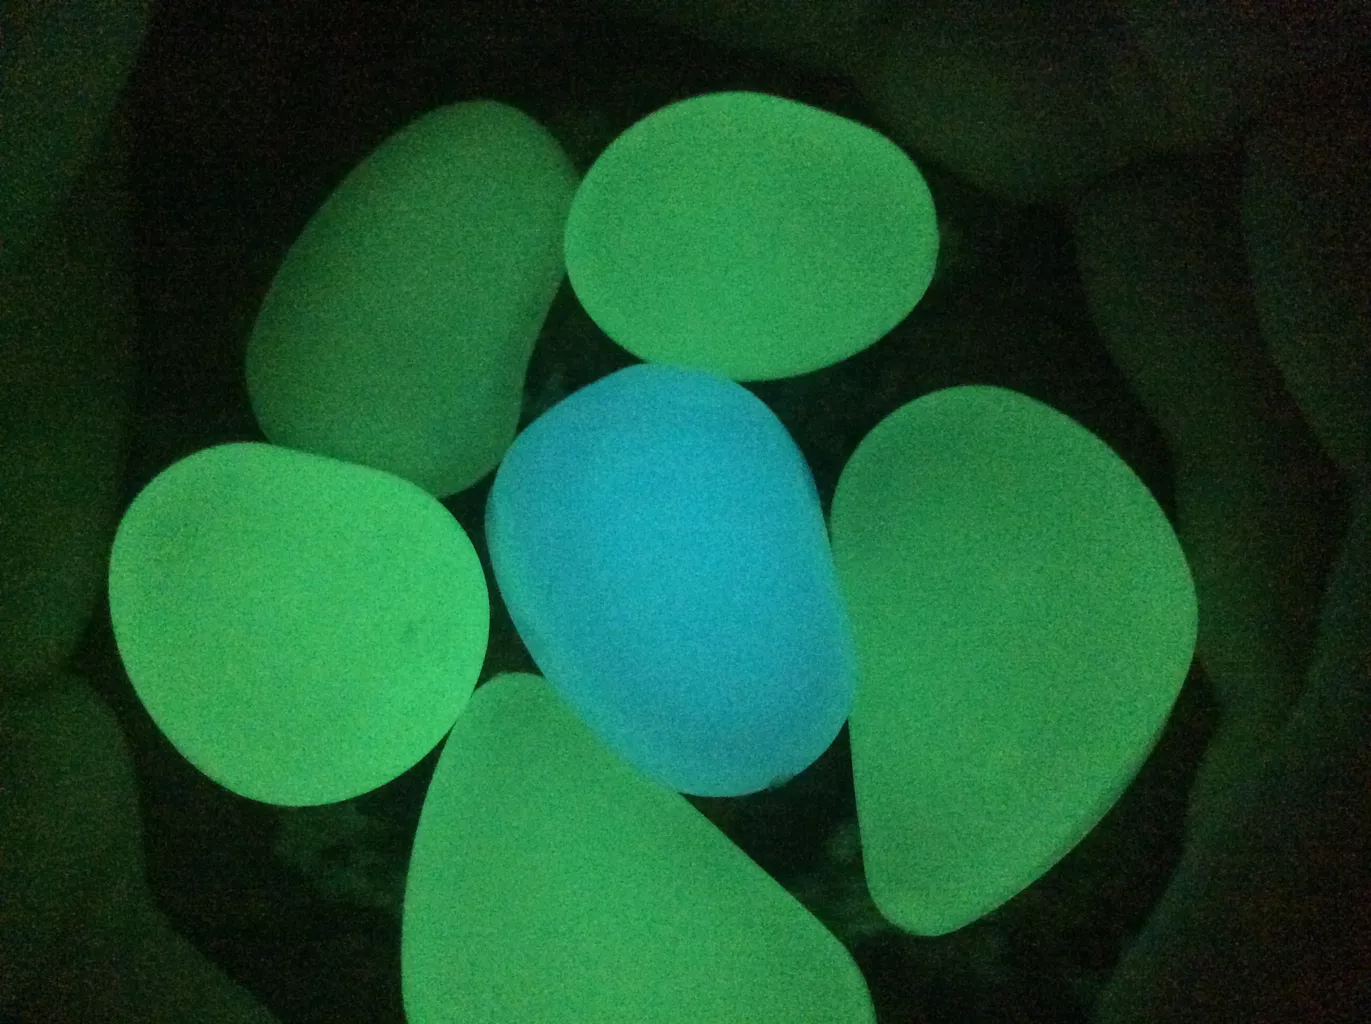 سنگ تزیینی شب تاب مدل I-Green بسته 5 عددی